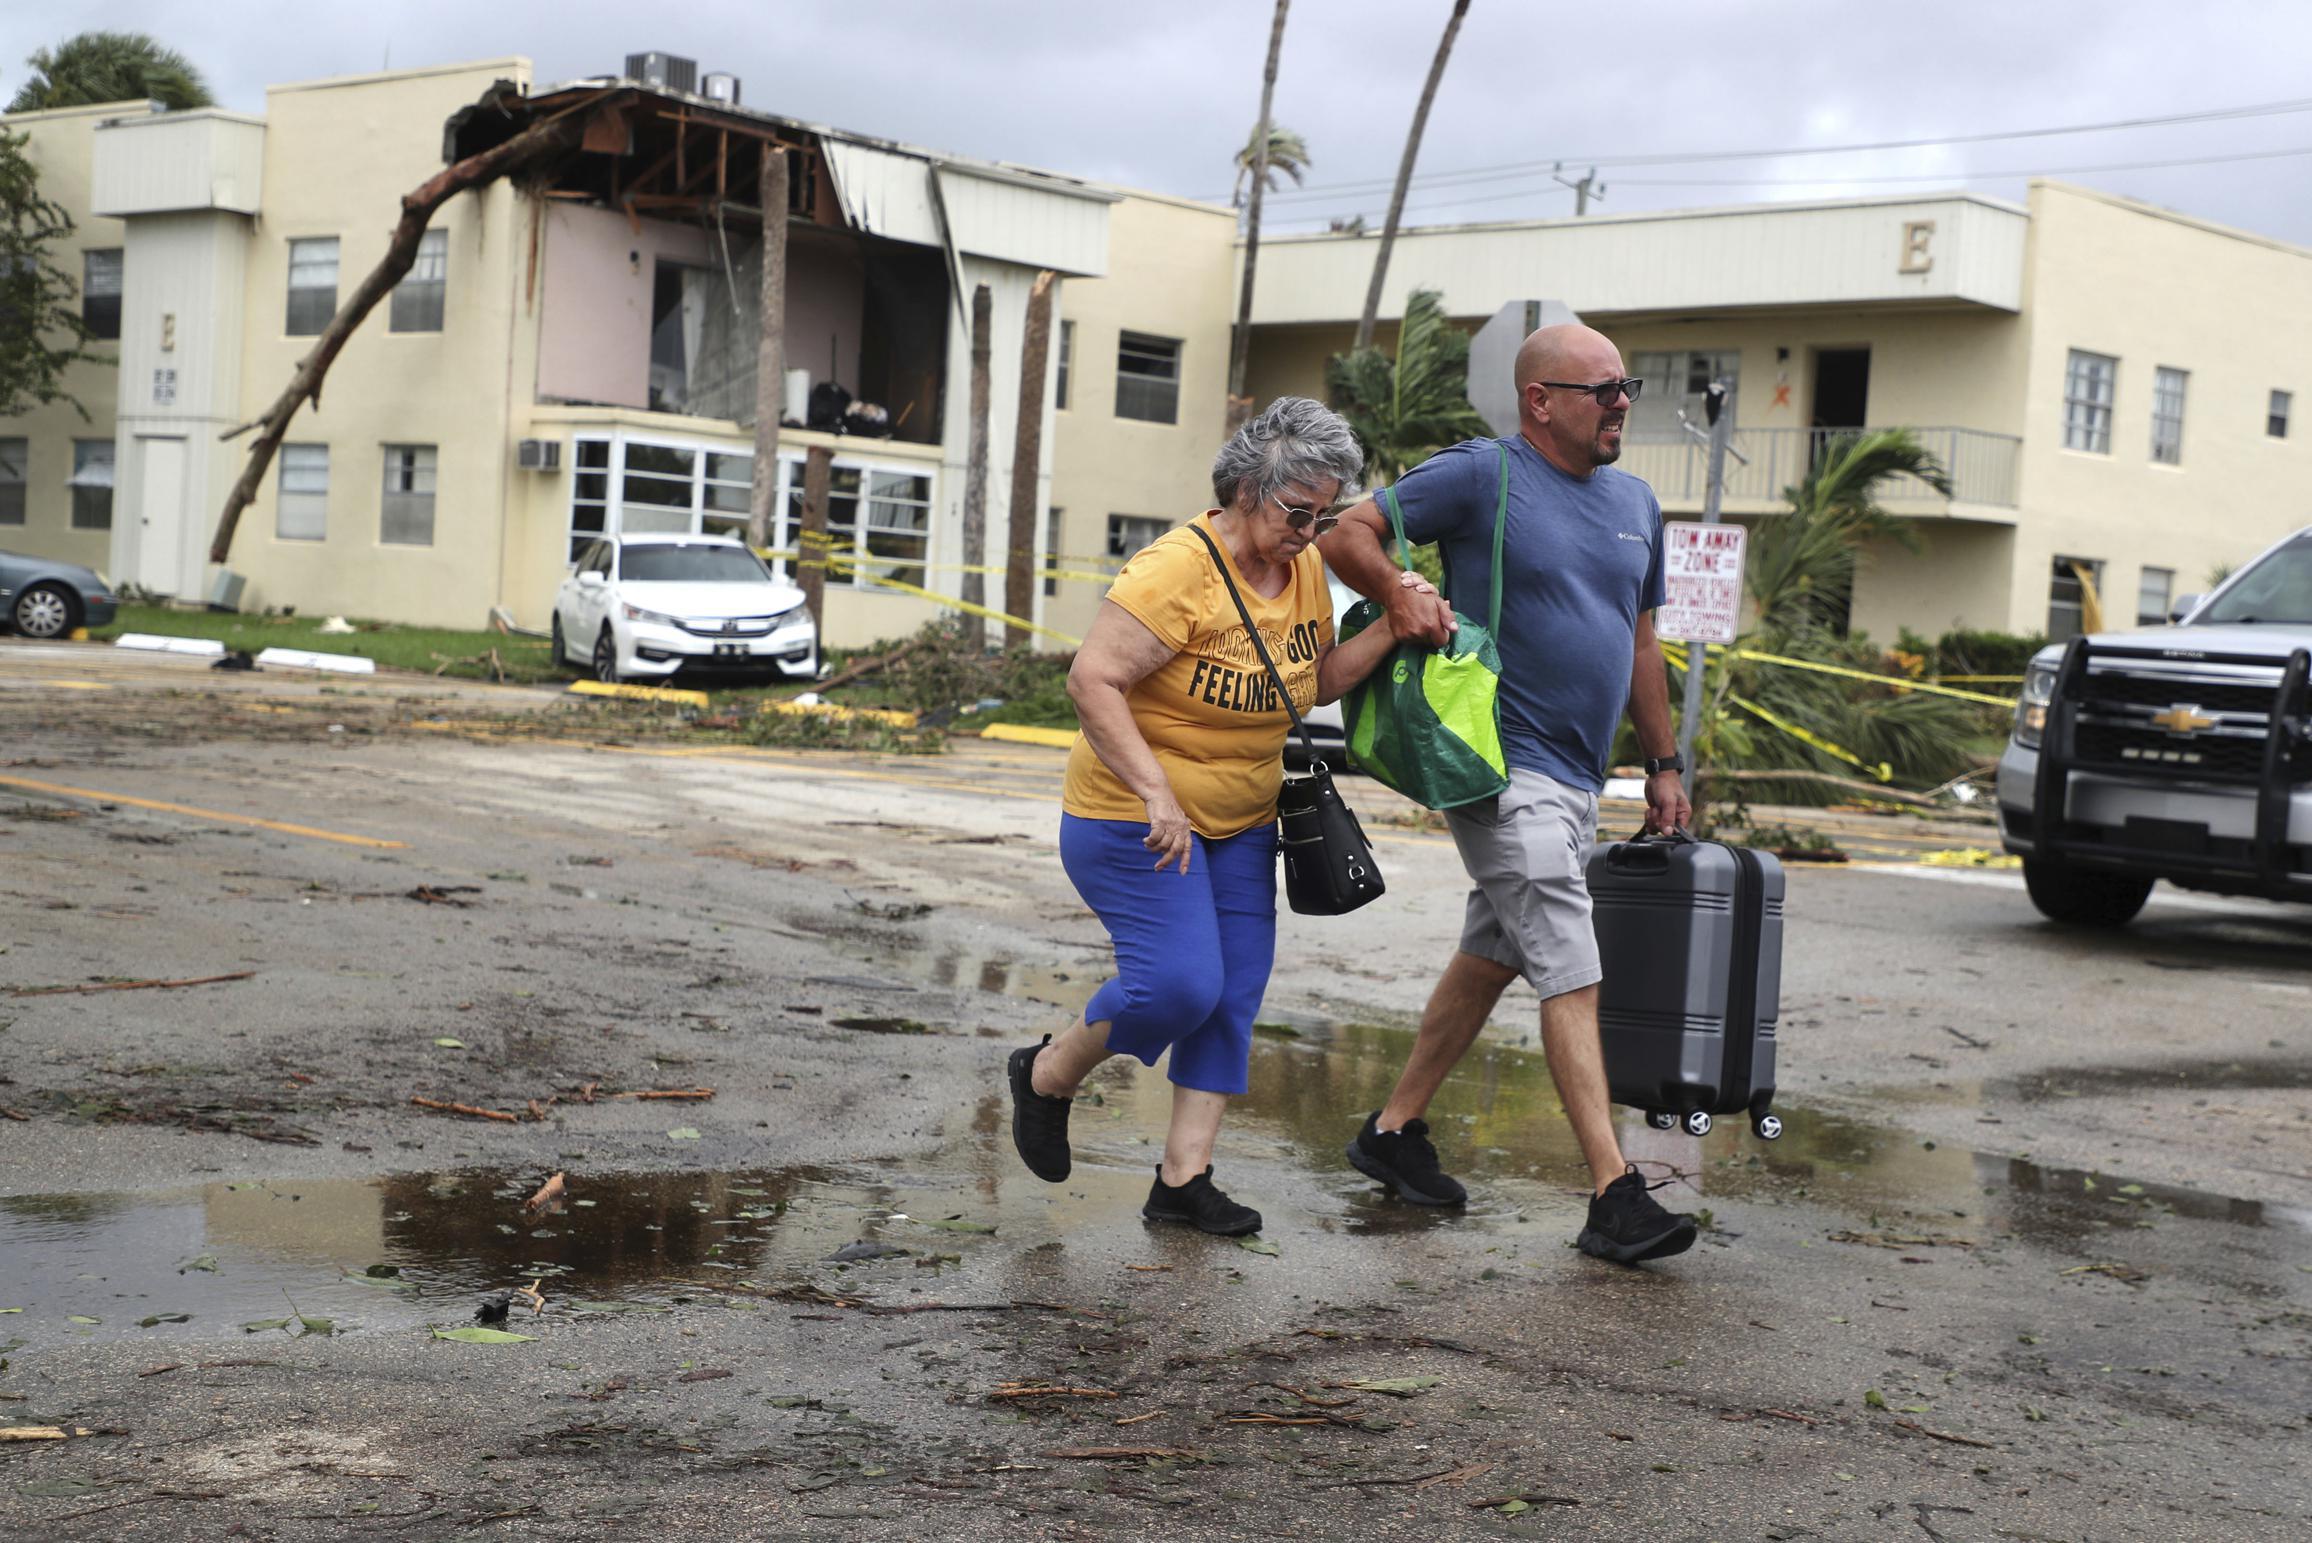 L’uragano Ian approda in Florida: venti fino a 250 km/h, 1 milione di persone senza corrente